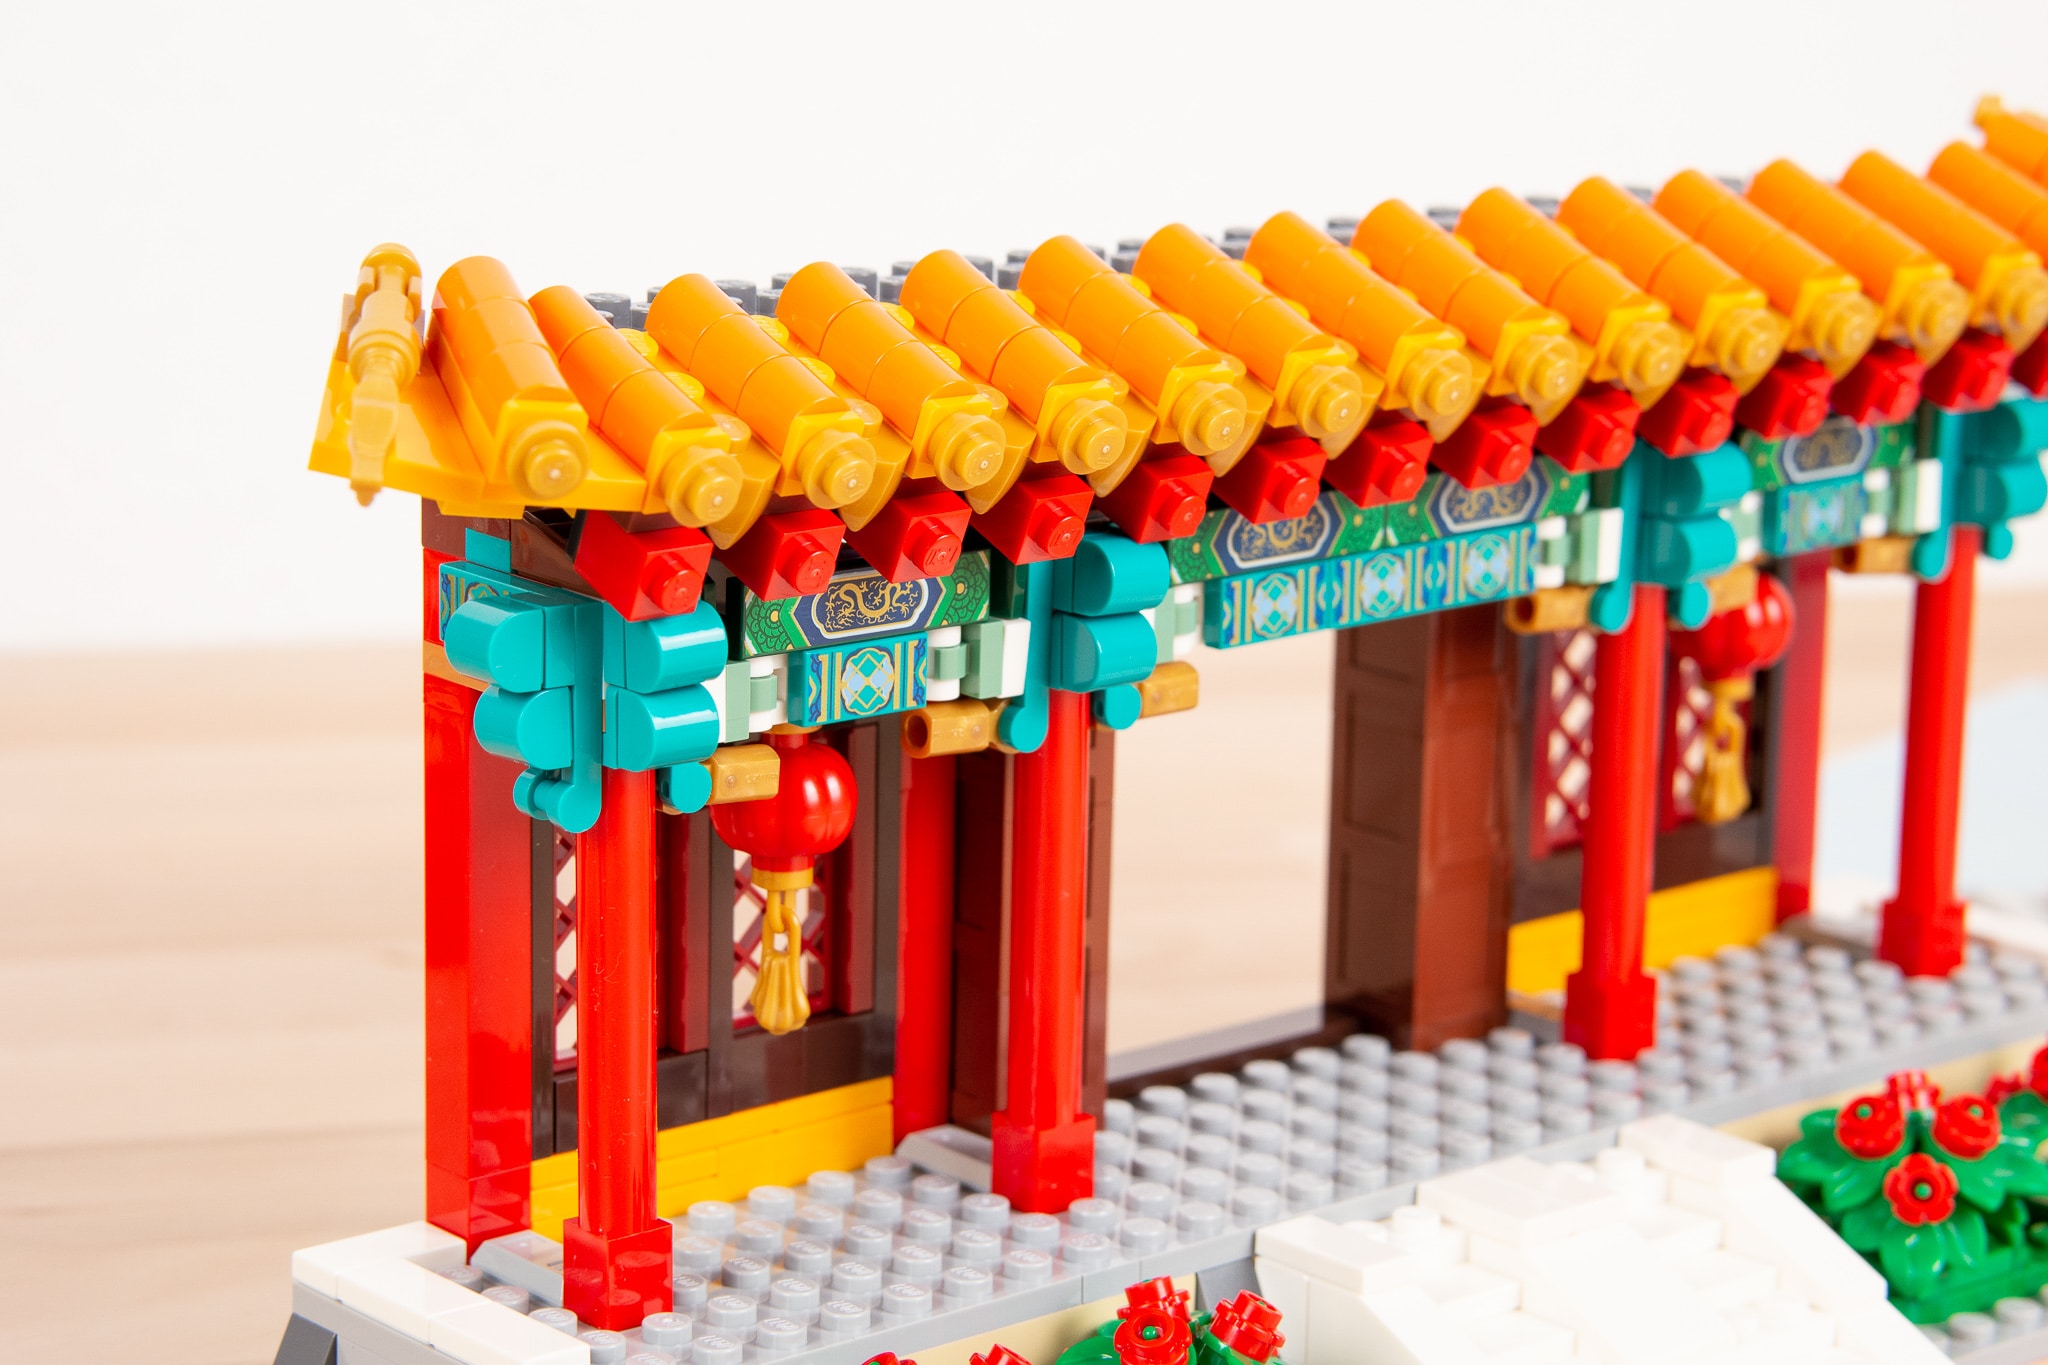 LEGO 80105 Tempelmarkt Zum Chinesischen Neujahrsfest Review (17)